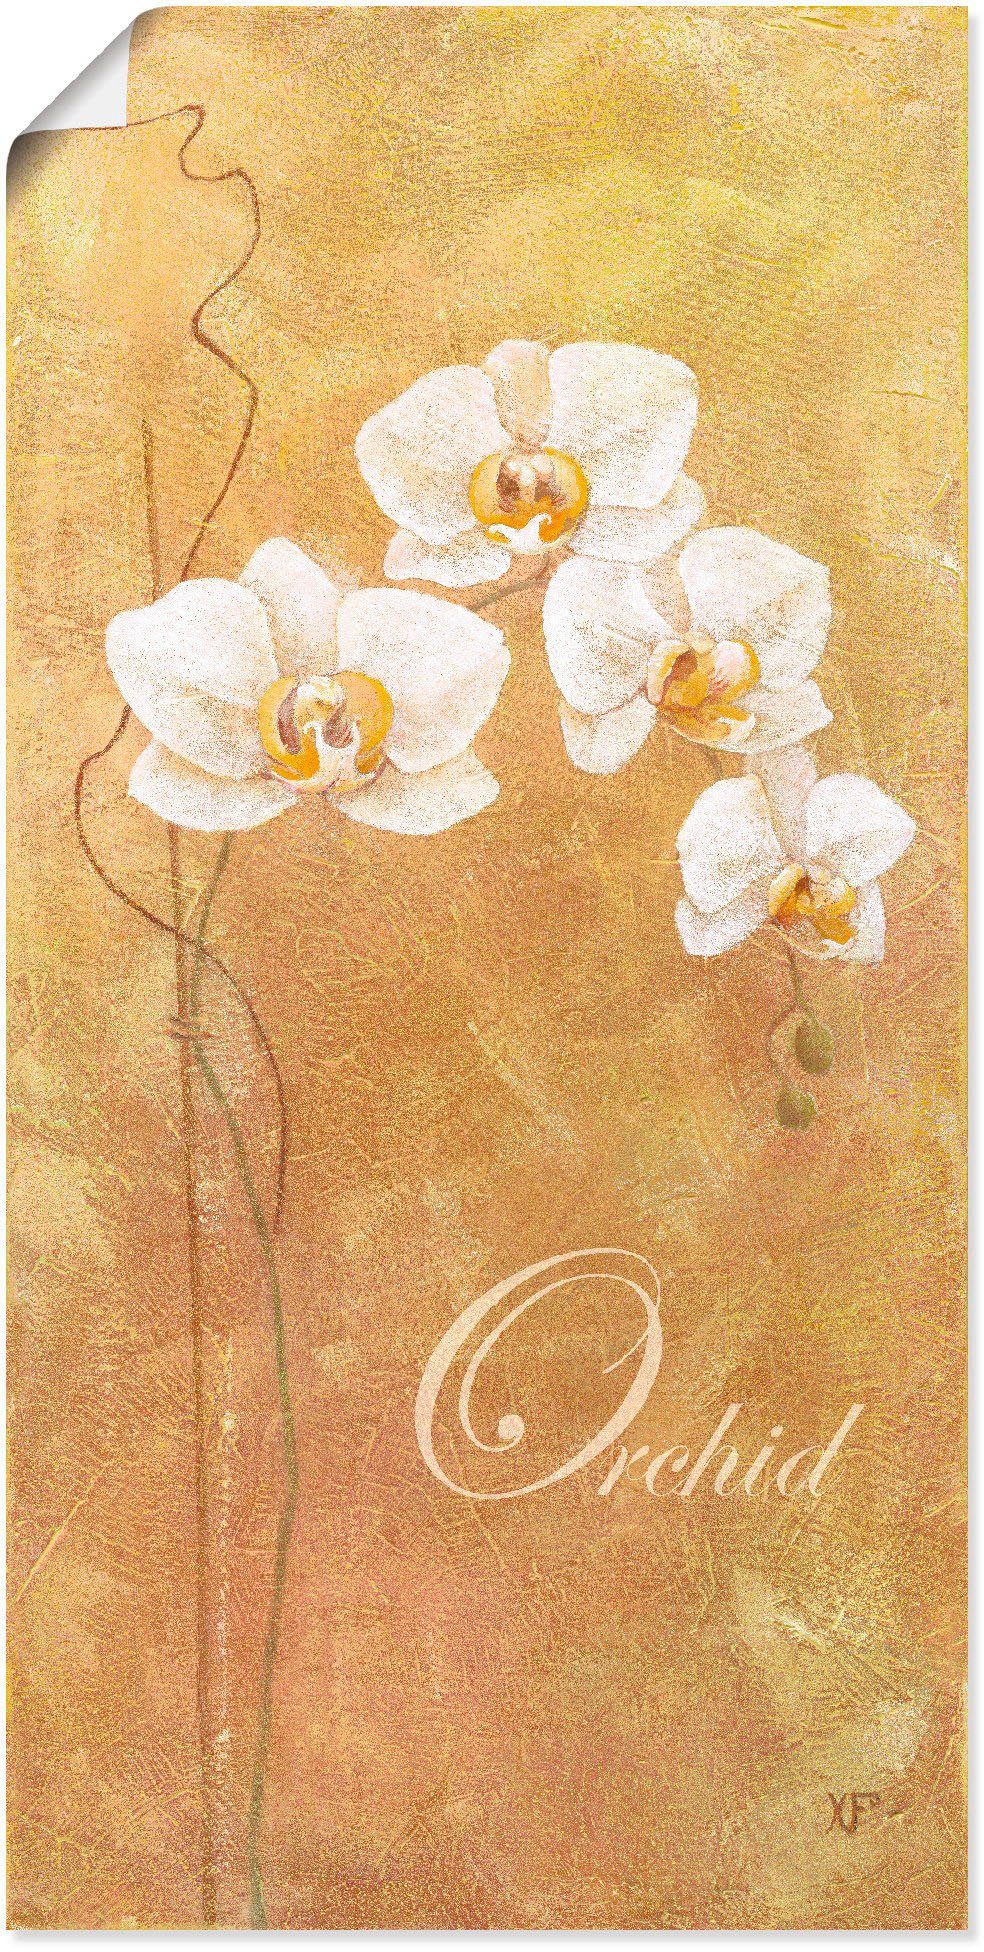 Artland Artprint Filigraan verwerkte orchidee in vele afmetingen & productsoorten - artprint van aluminium / artprint voor buiten, artprint op linnen, poster, muursticker / wandfol